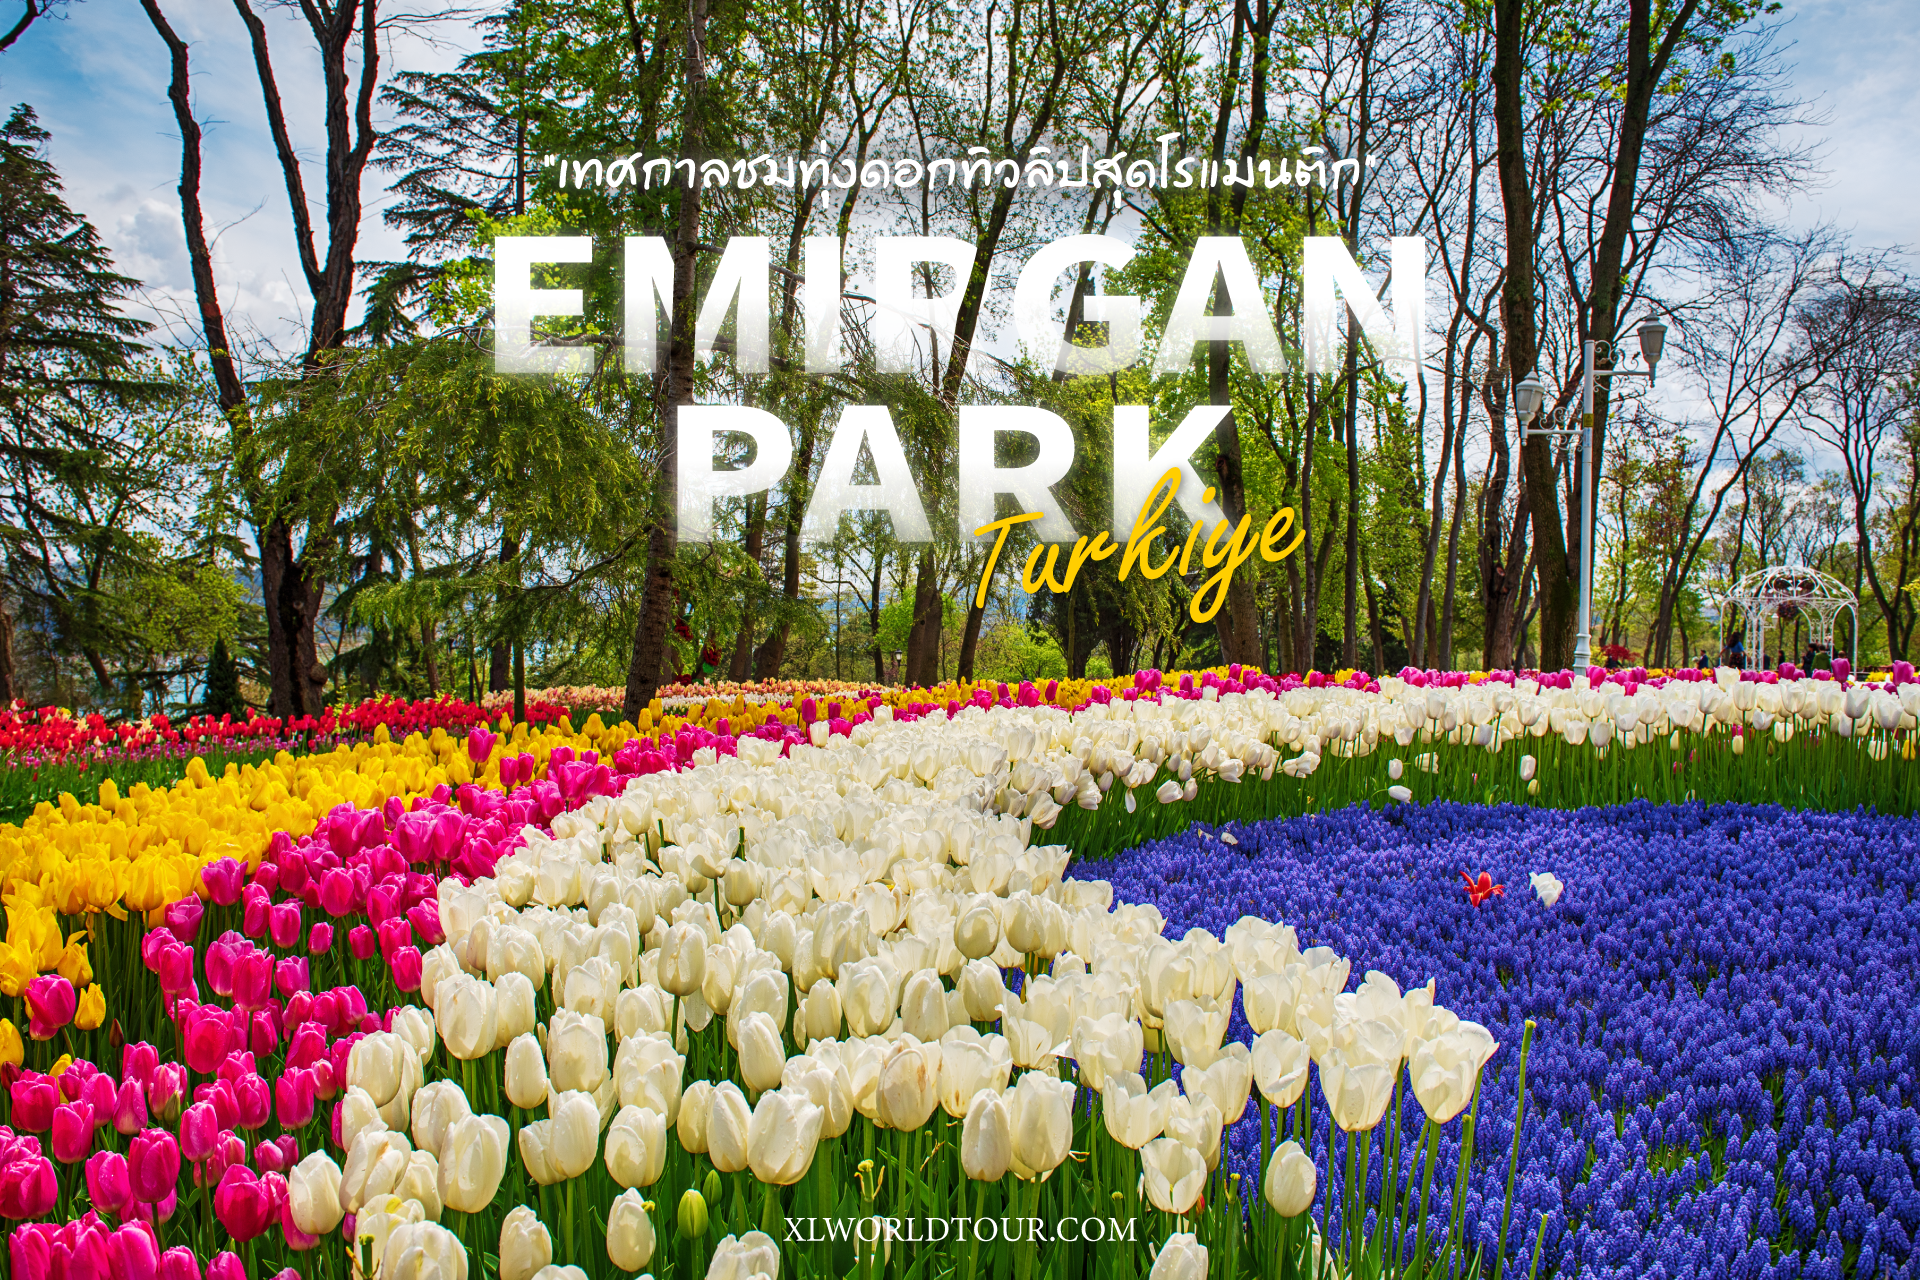 ชมเทศกาลดอกทิวลิปในสวน Emirgan Park ที่ตุรเคีย (ตุรกี)